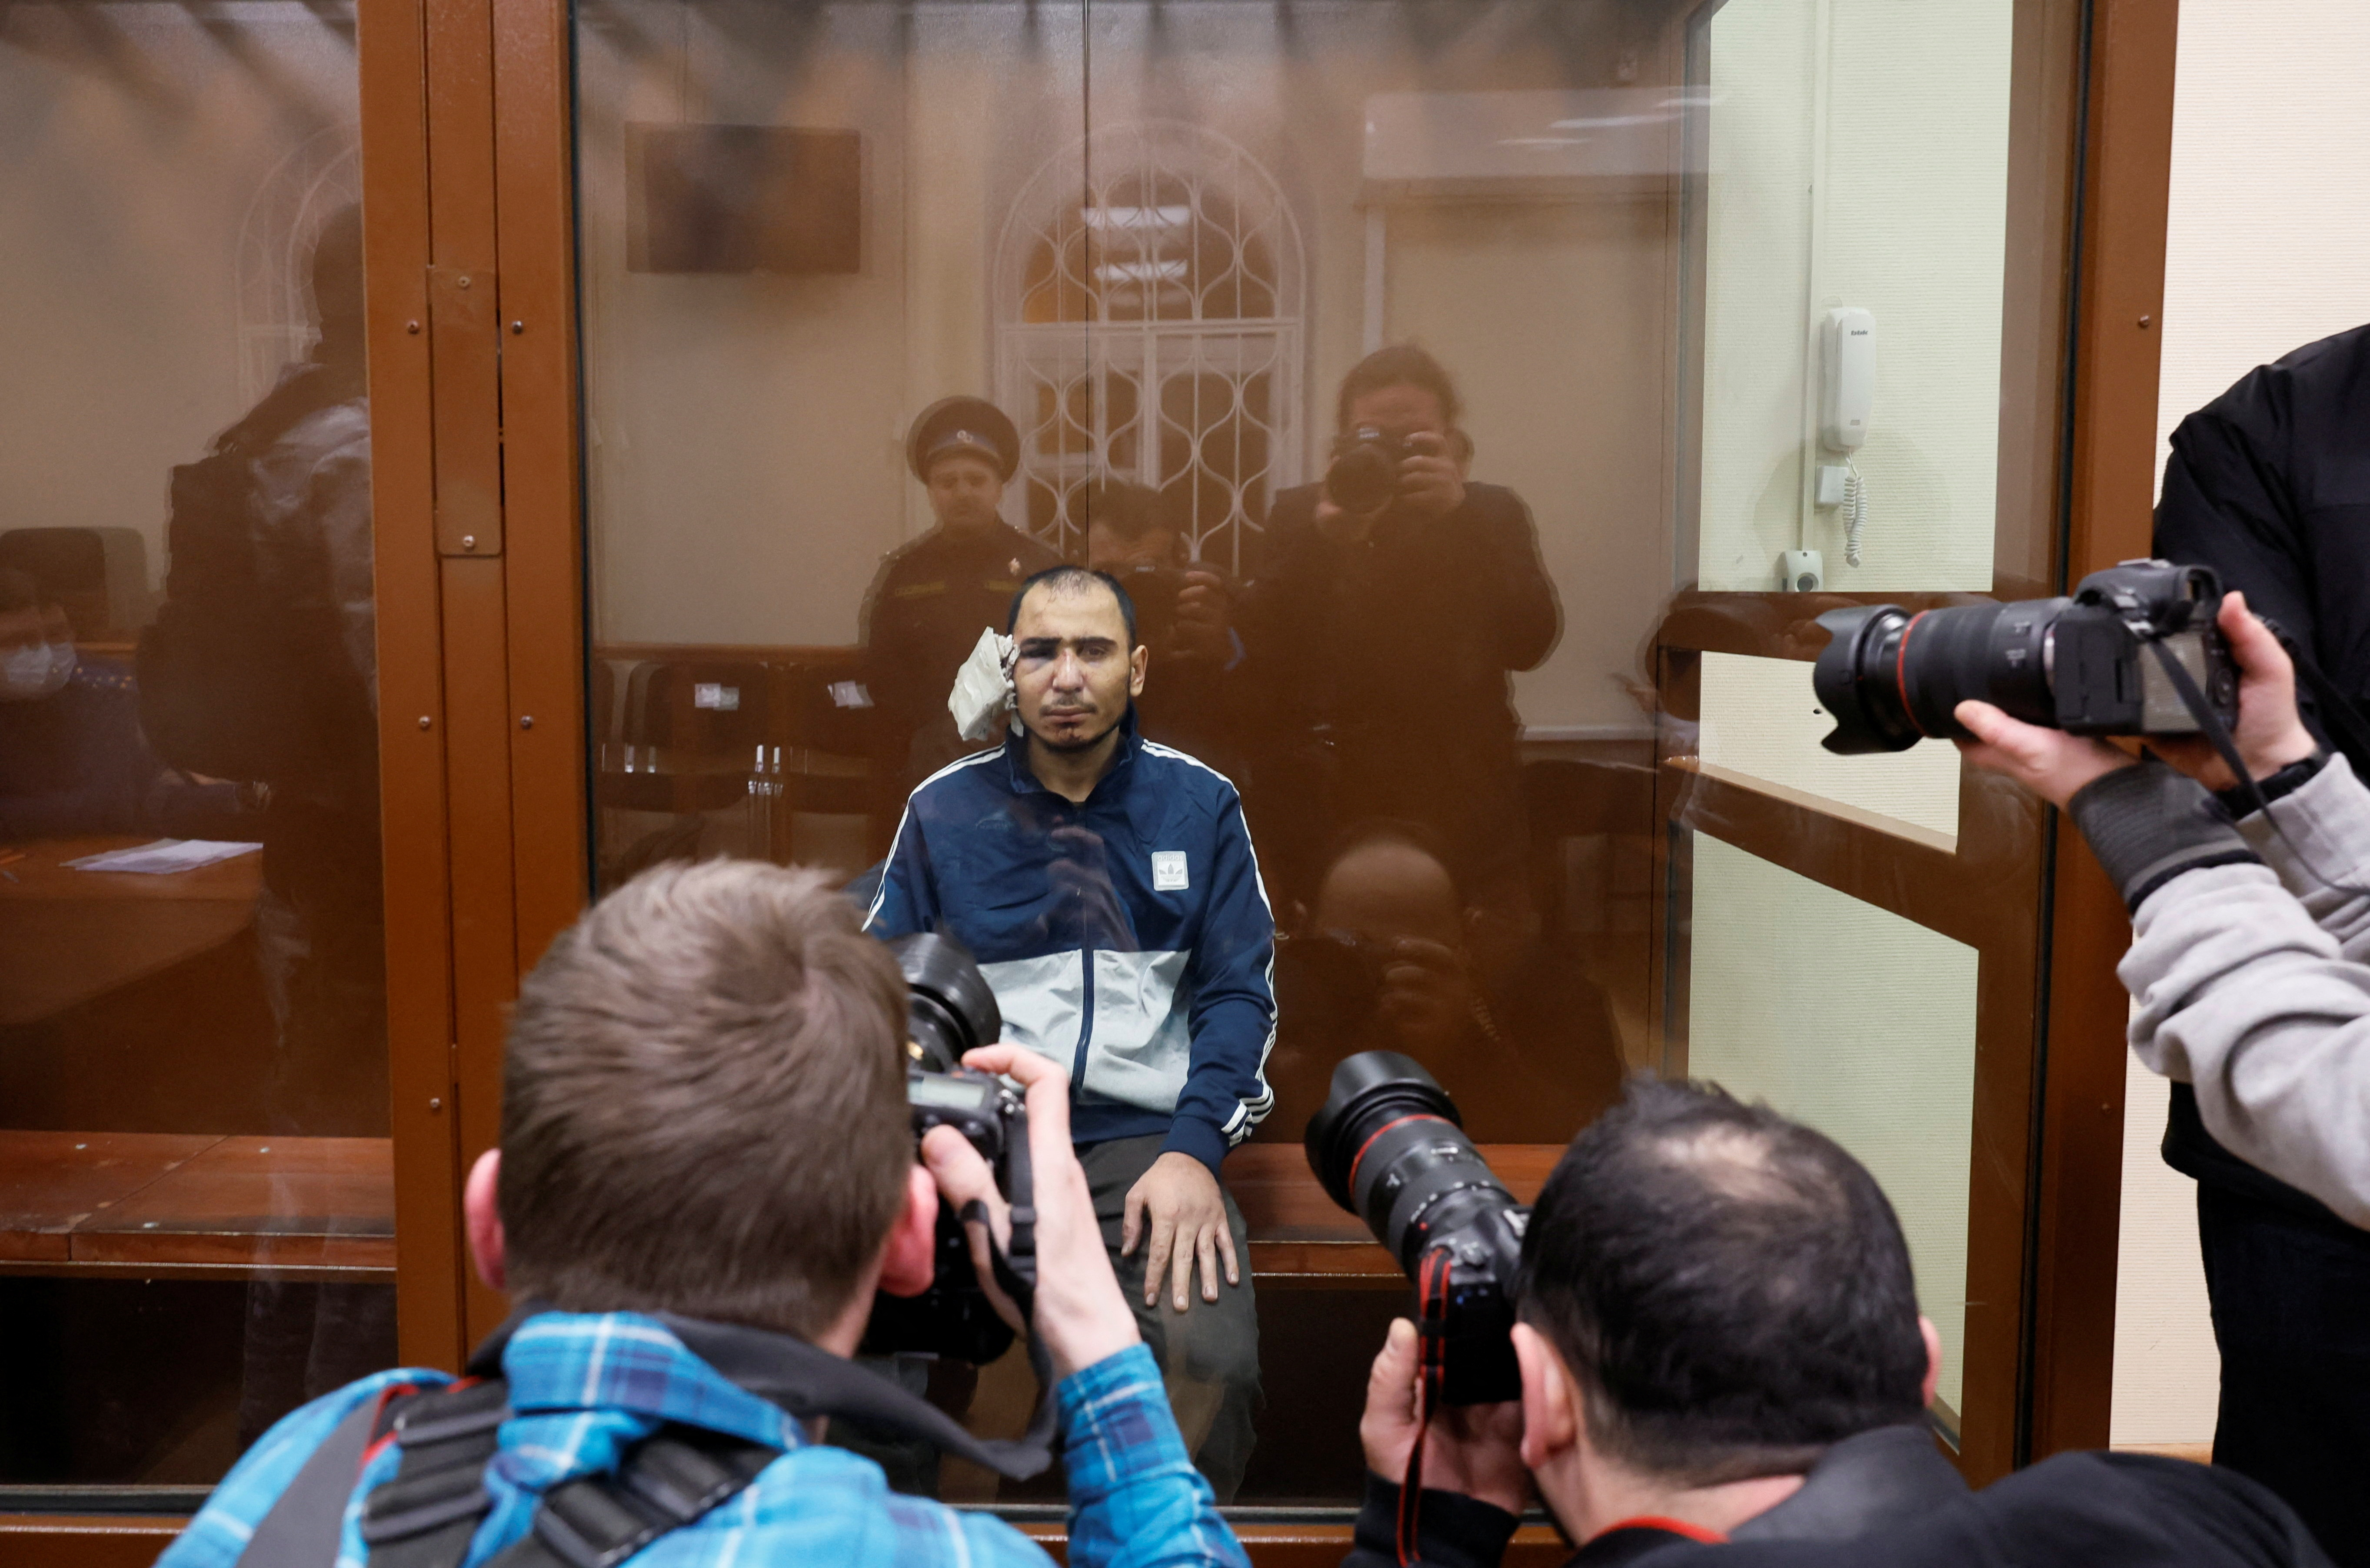 Saidakrami Murodali Rachabalizoda wurde vor Gericht in einem Glaskäfig ausgestellt, nachdem ihm ein Ohr abgeschnitten worden war